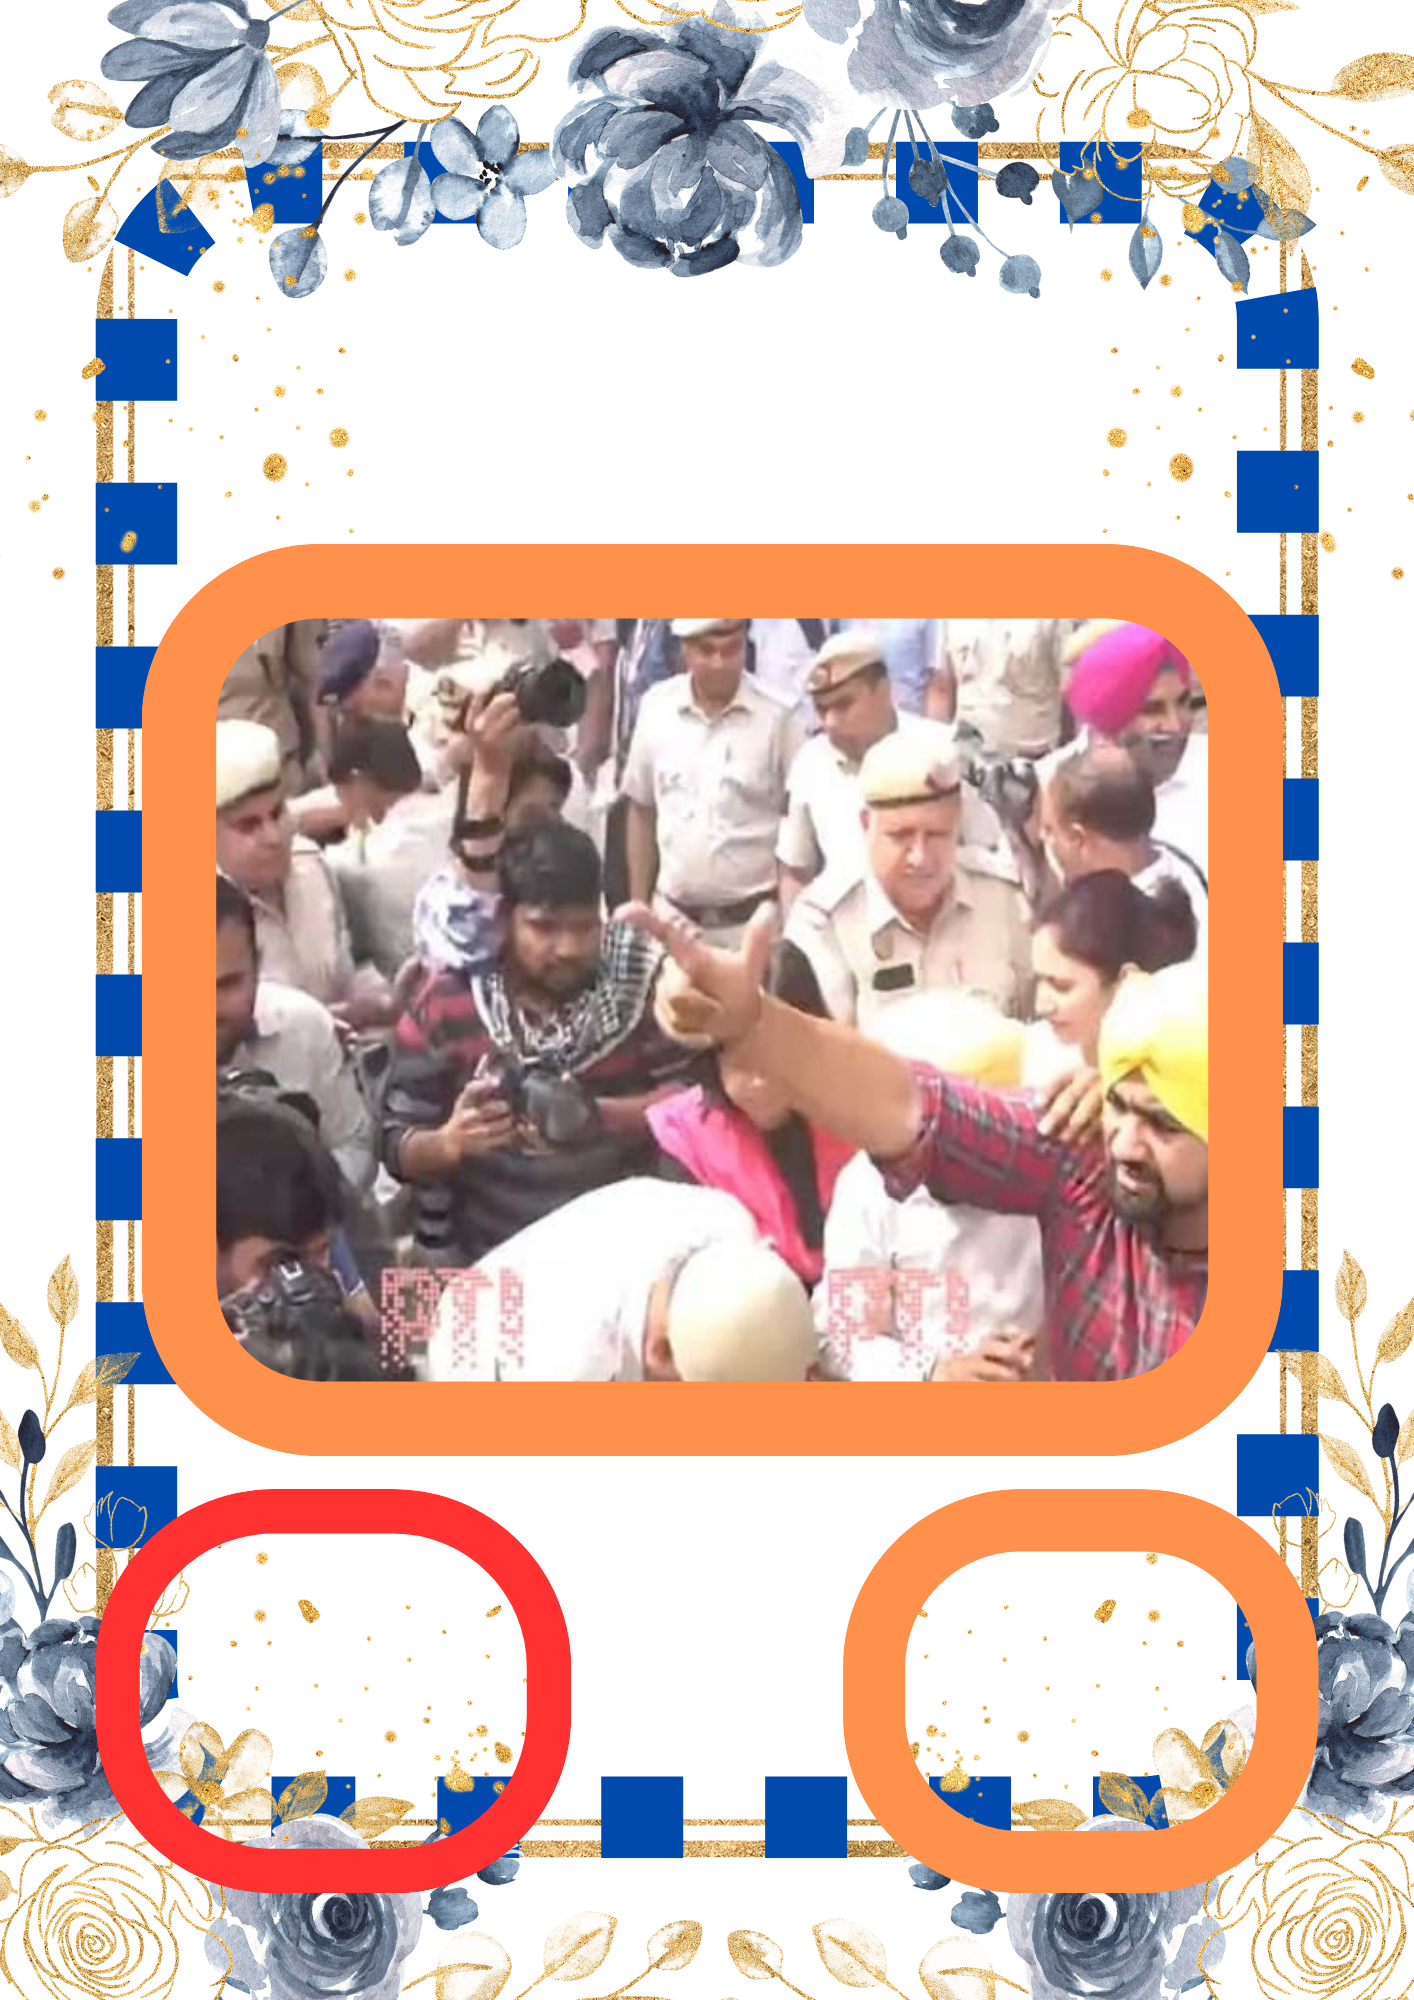 কেজরিওয়ালের গ্রেপ্তার নিয়ে প্রধানমন্ত্রীর বাসভবনে ঘেরাও AAP ইডি হেফাজতে থেকে দ্বিতীয় নির্দেশ জারি করলেন দিল্লির মুখ্যমন্ত্রী